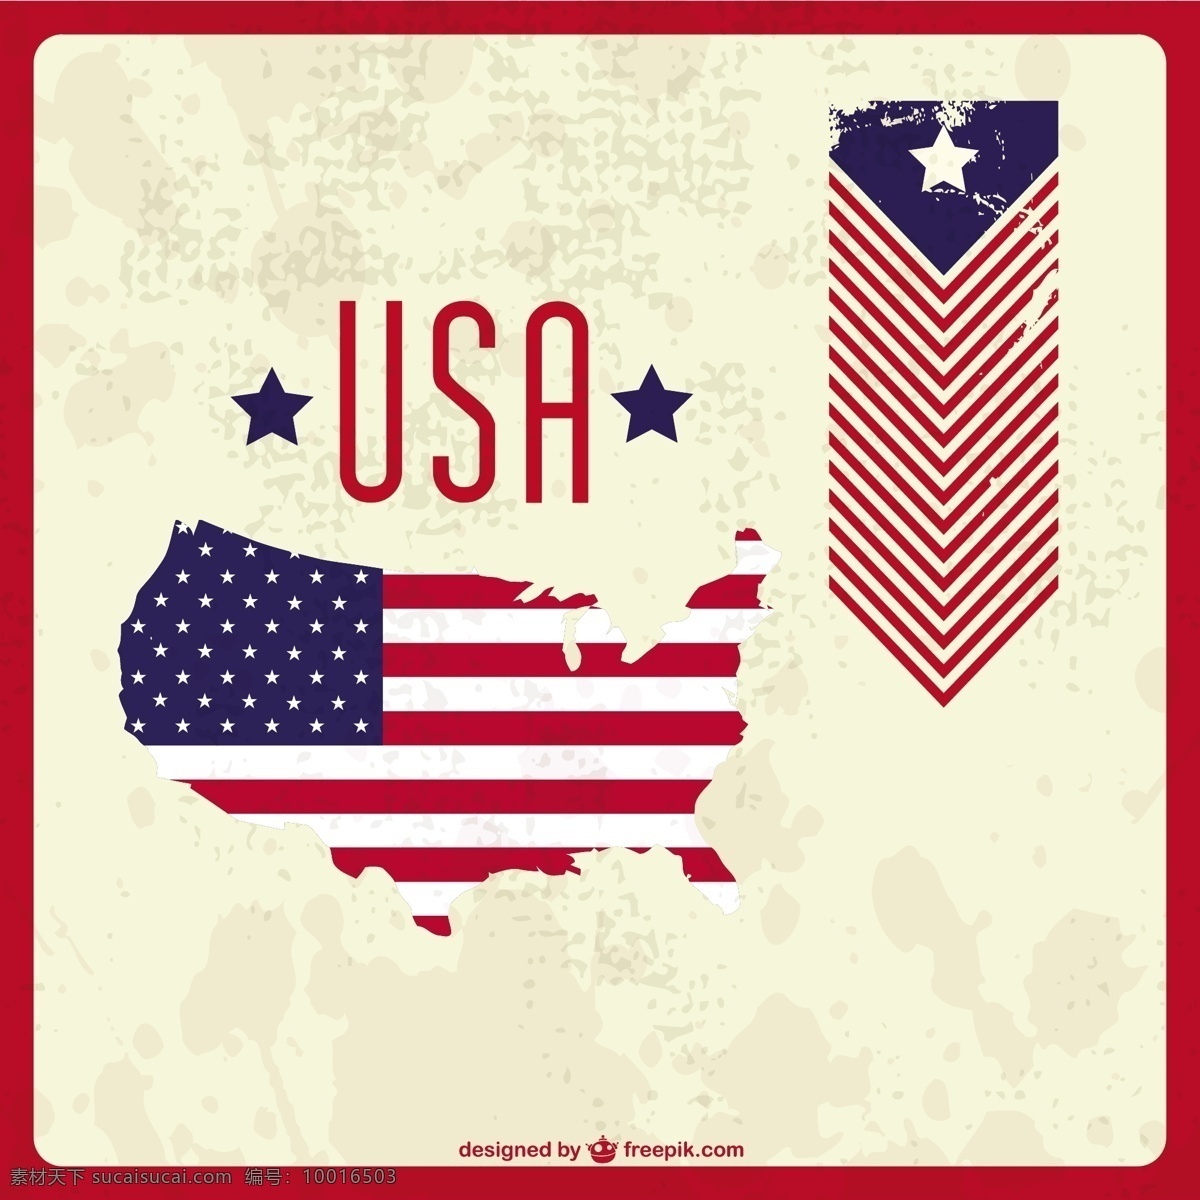 爱国 美国 地图 背景 老式 海报 复古 老式背景 标志 模板 快乐 工作 壁纸 图形 布局 庆祝 节日 图形设计 白色